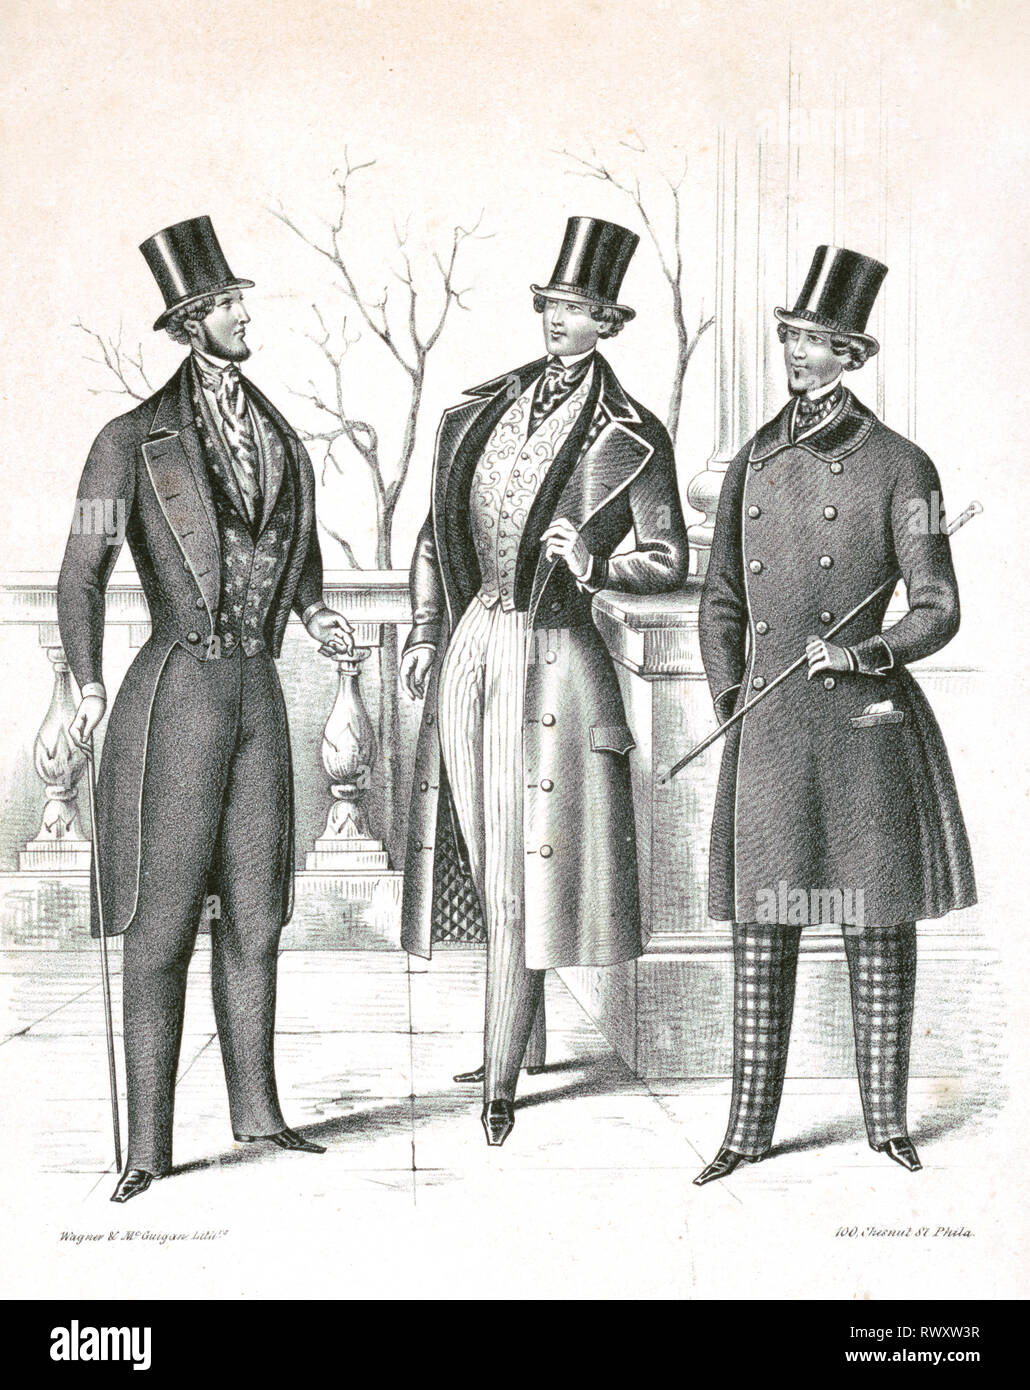 Imprimer montre une publicité pour hommes Vêtements montrant trois hommes à la mode avec haut de forme et des cannes ca. 1846-1858 Banque D'Images